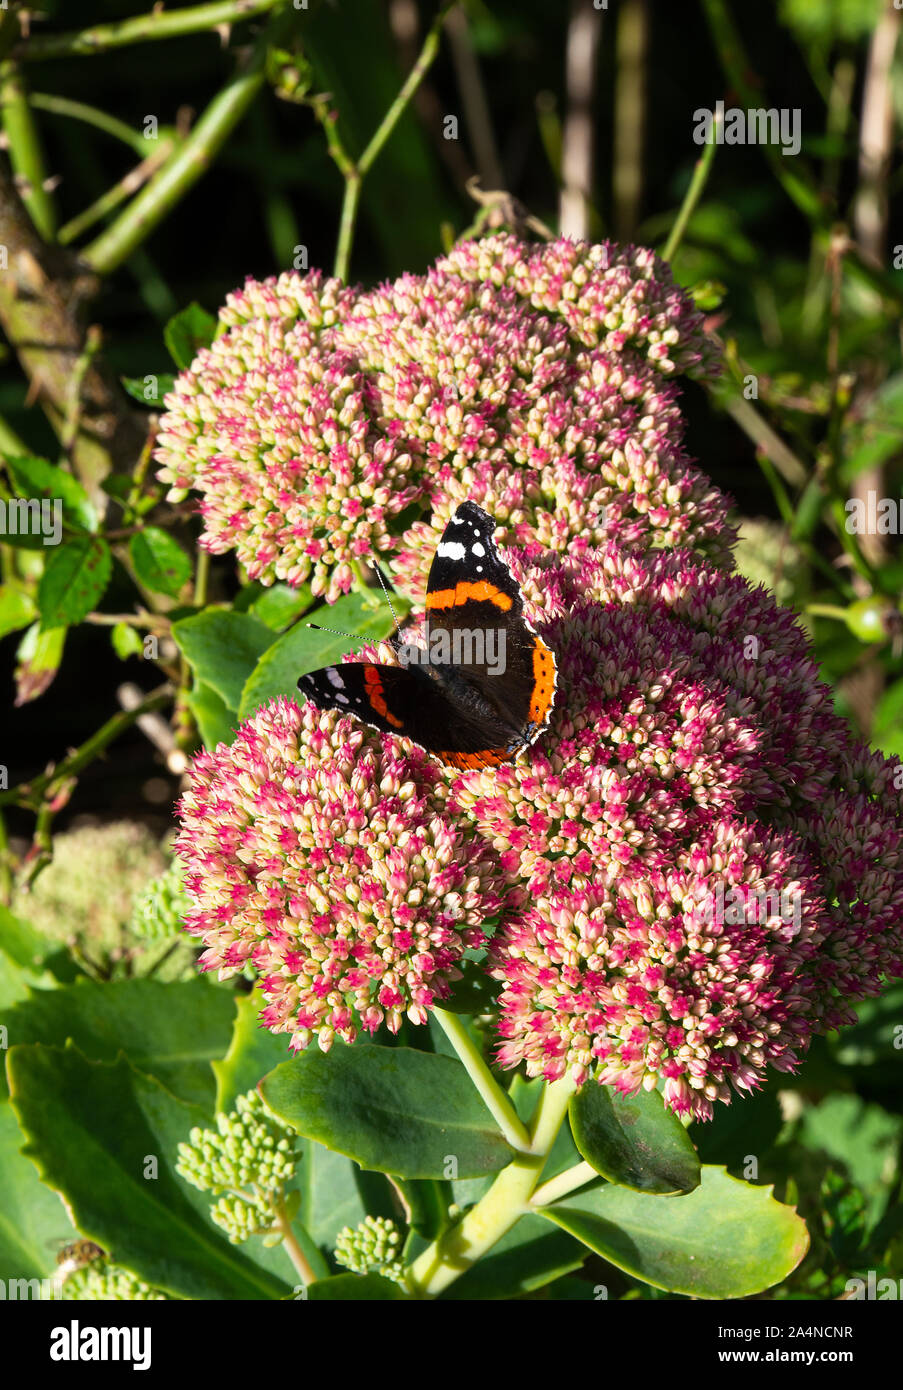 Un amiral rouge papillon nourrissage sur Nectar sur une tête de fleur de Sedum joie d'automne dans un jardin près de Sawdon North Yorkshire Angleterre Royaume-Uni Banque D'Images